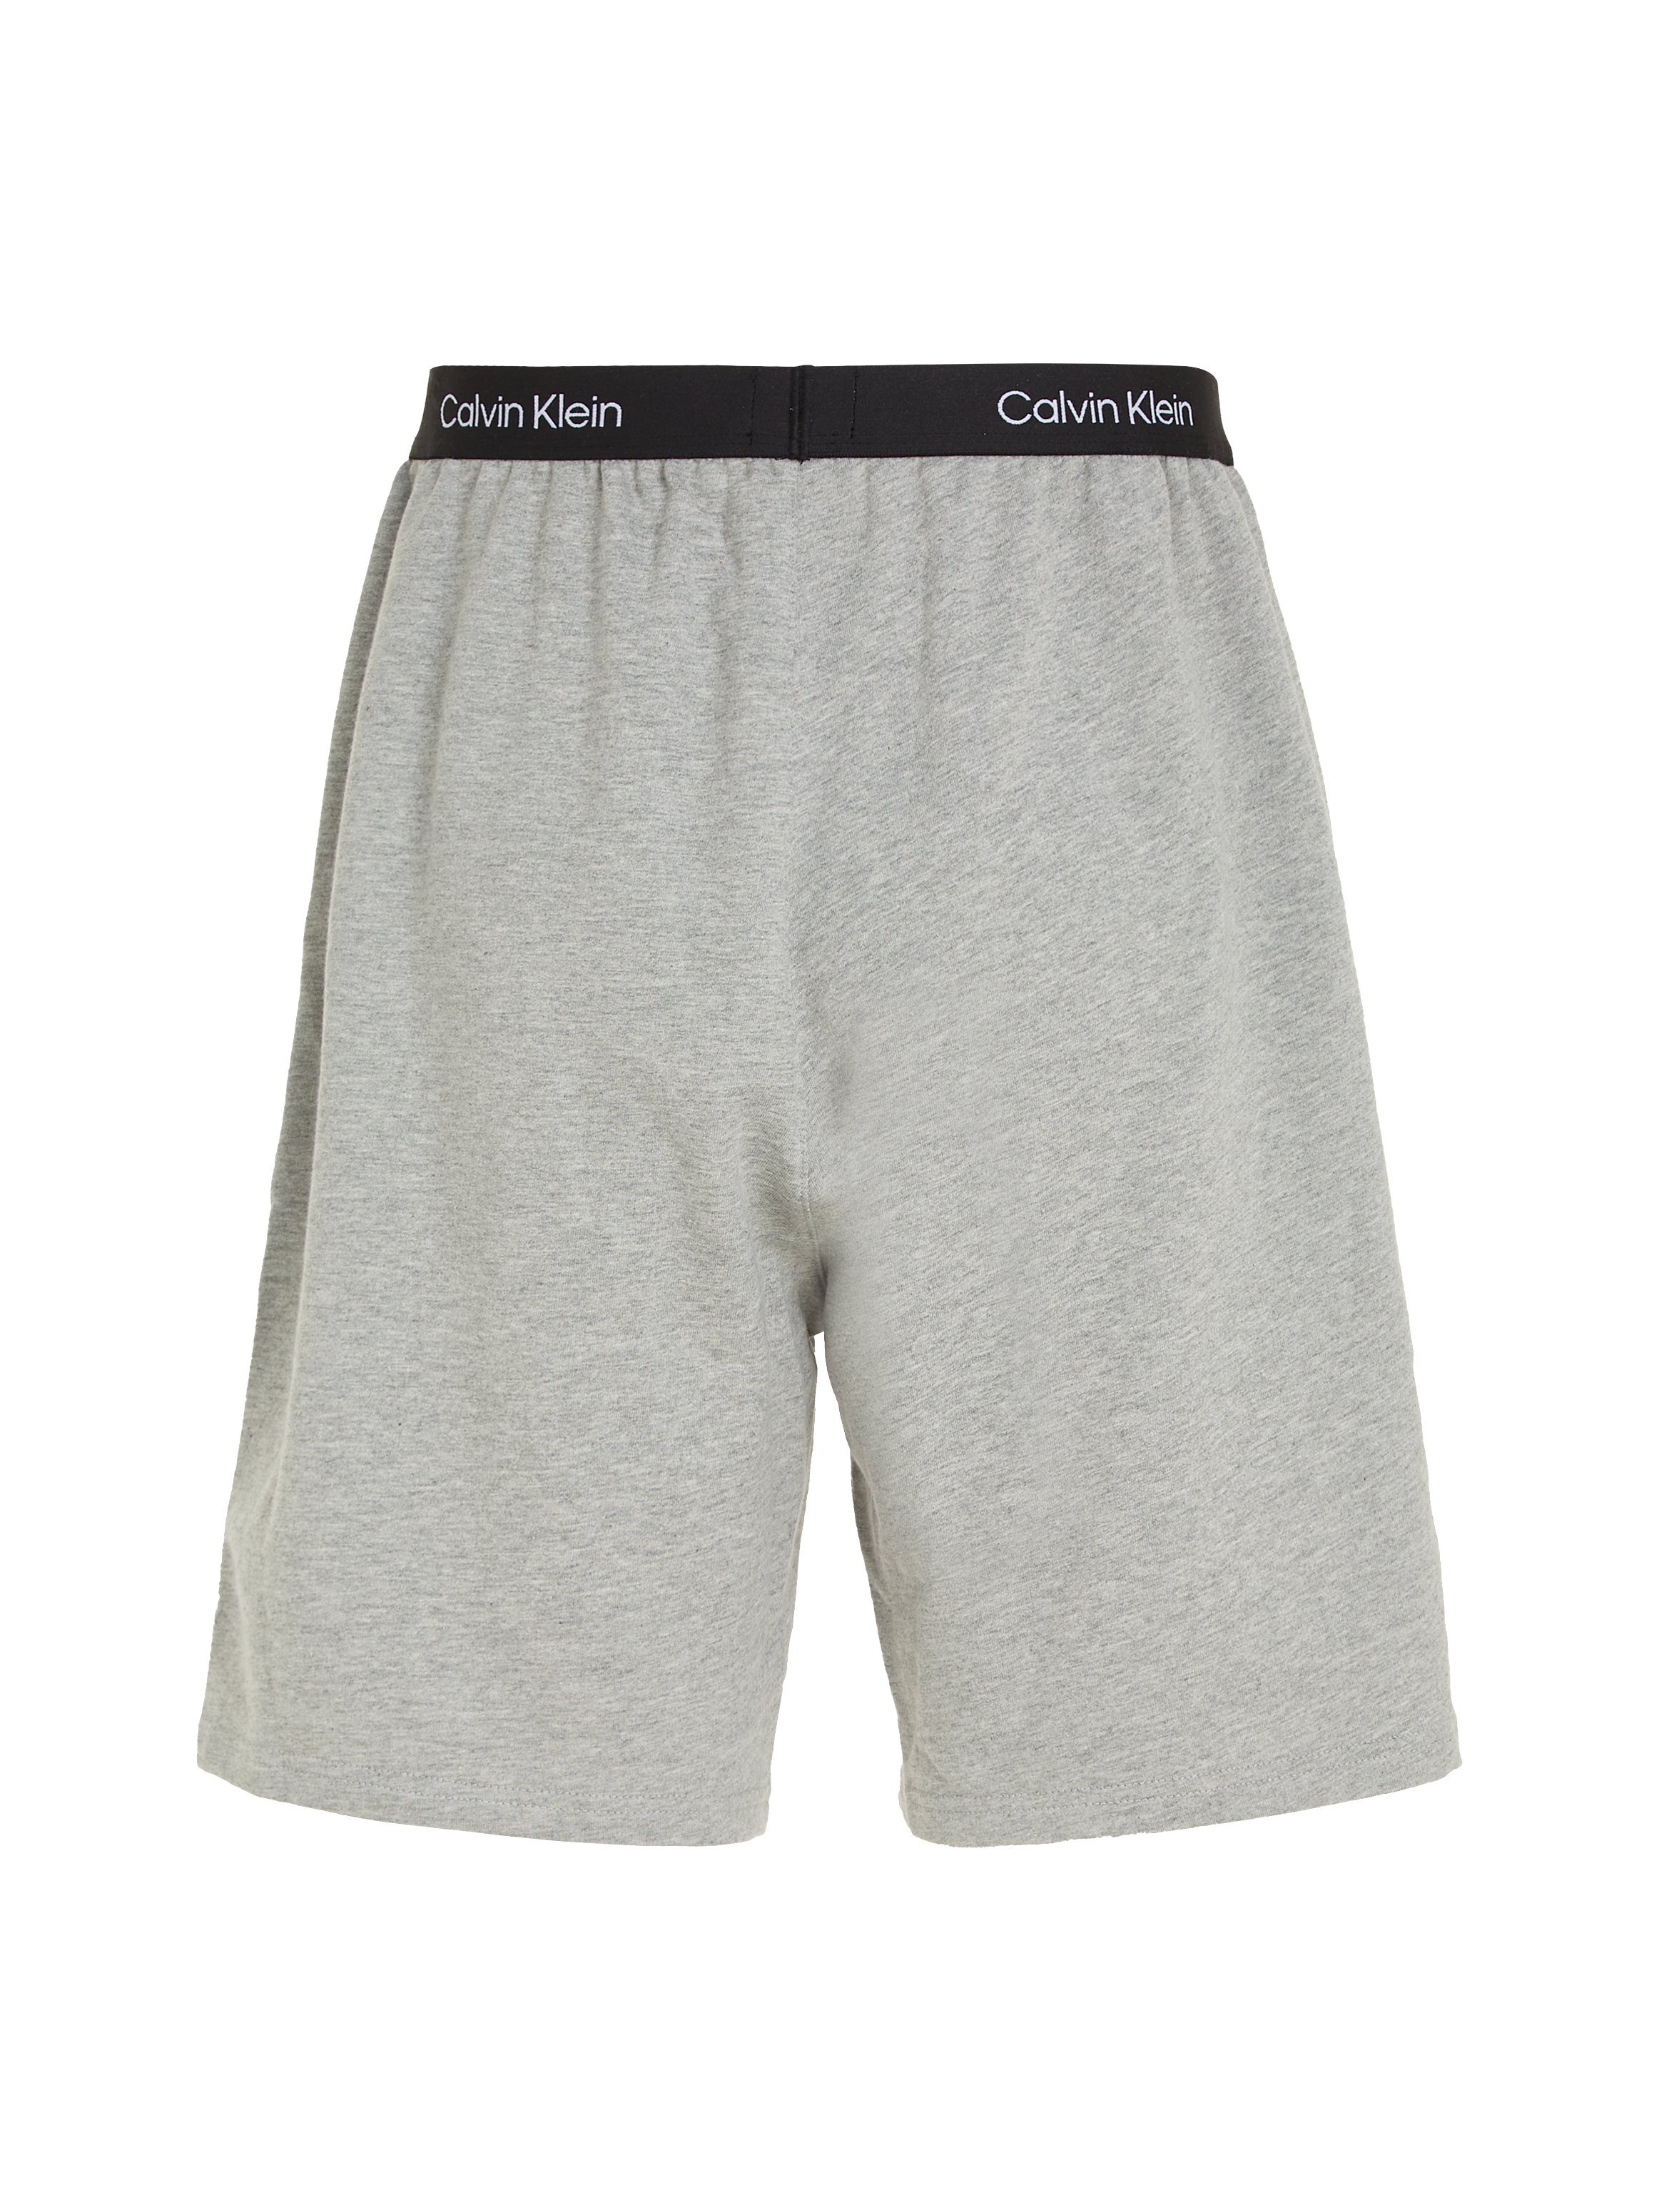 Calvin Klein SHORT SLEEP GREY-HEATHER Underwear Logo-Elastikbund Schlafshorts mit Calvin Klein